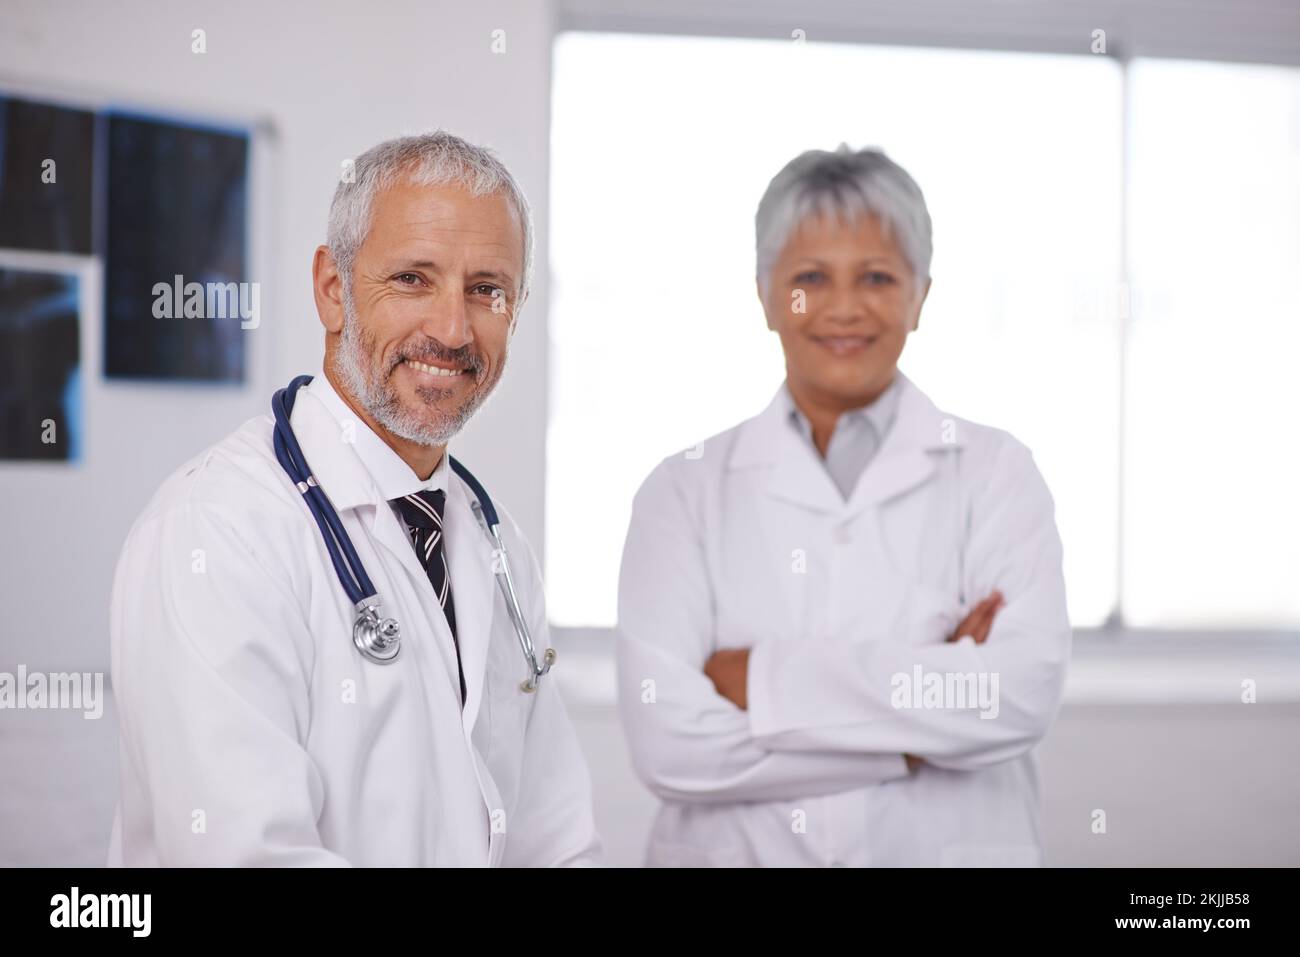 Rücksprache mit einem Kollegen für eine zweite Meinung. Zwei Ärzte arbeiten in einem Krankenhaus zusammen. Stockfoto